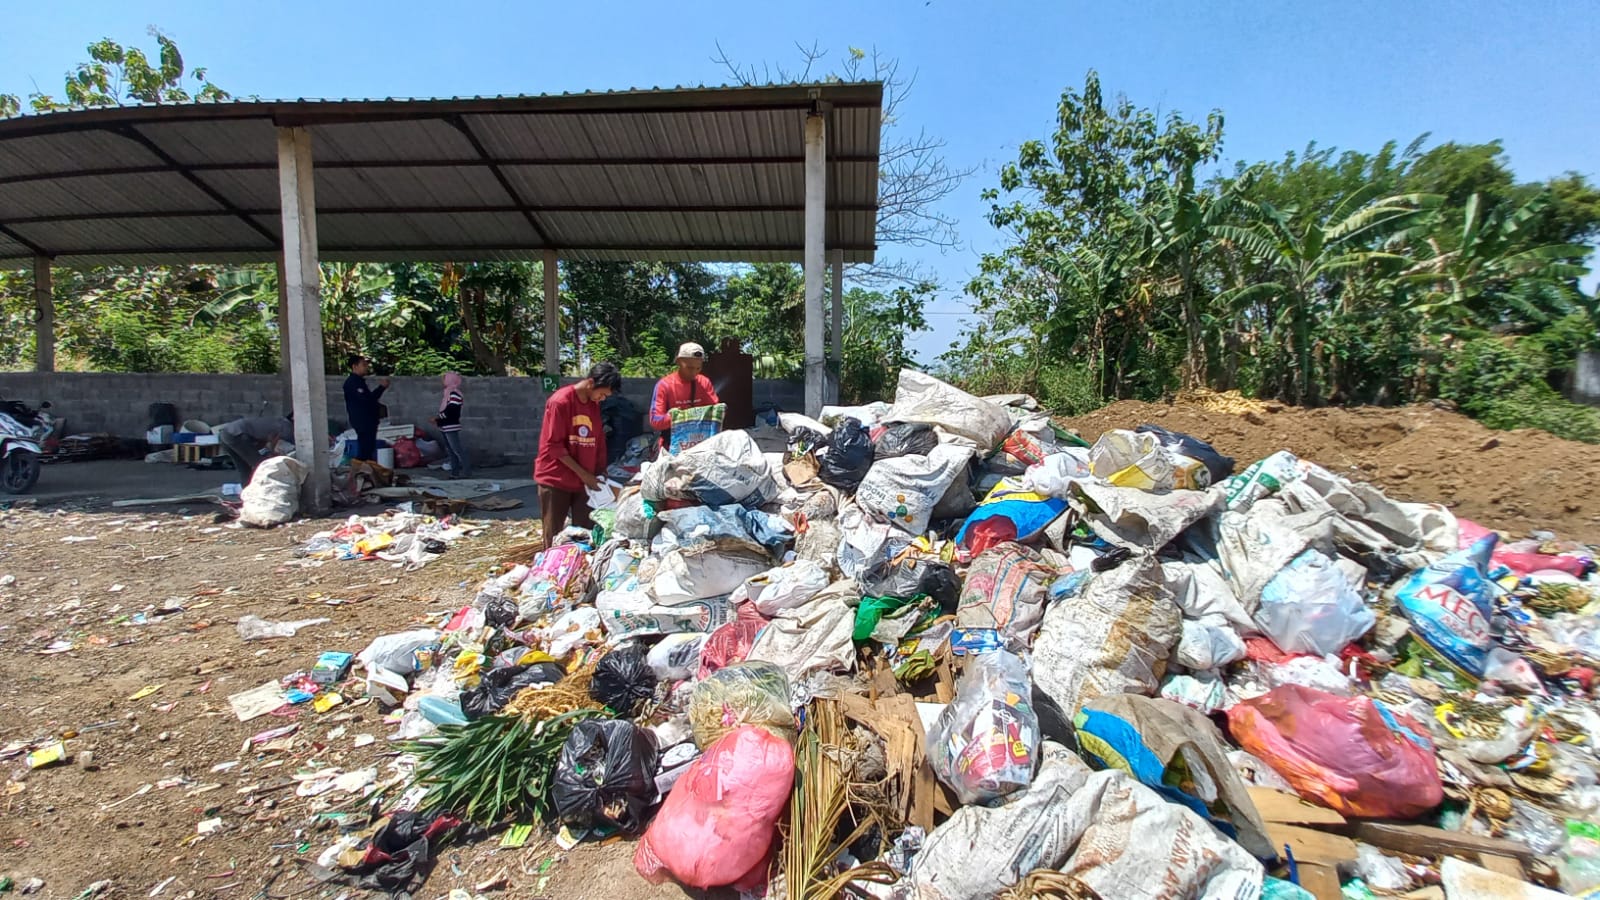 4 warga dusun Betas ikut aktif sebagai pengumpul dan pemilah sampah di TPS Dusun Betas. (Foto: Mahfud/Tugu Jatim)